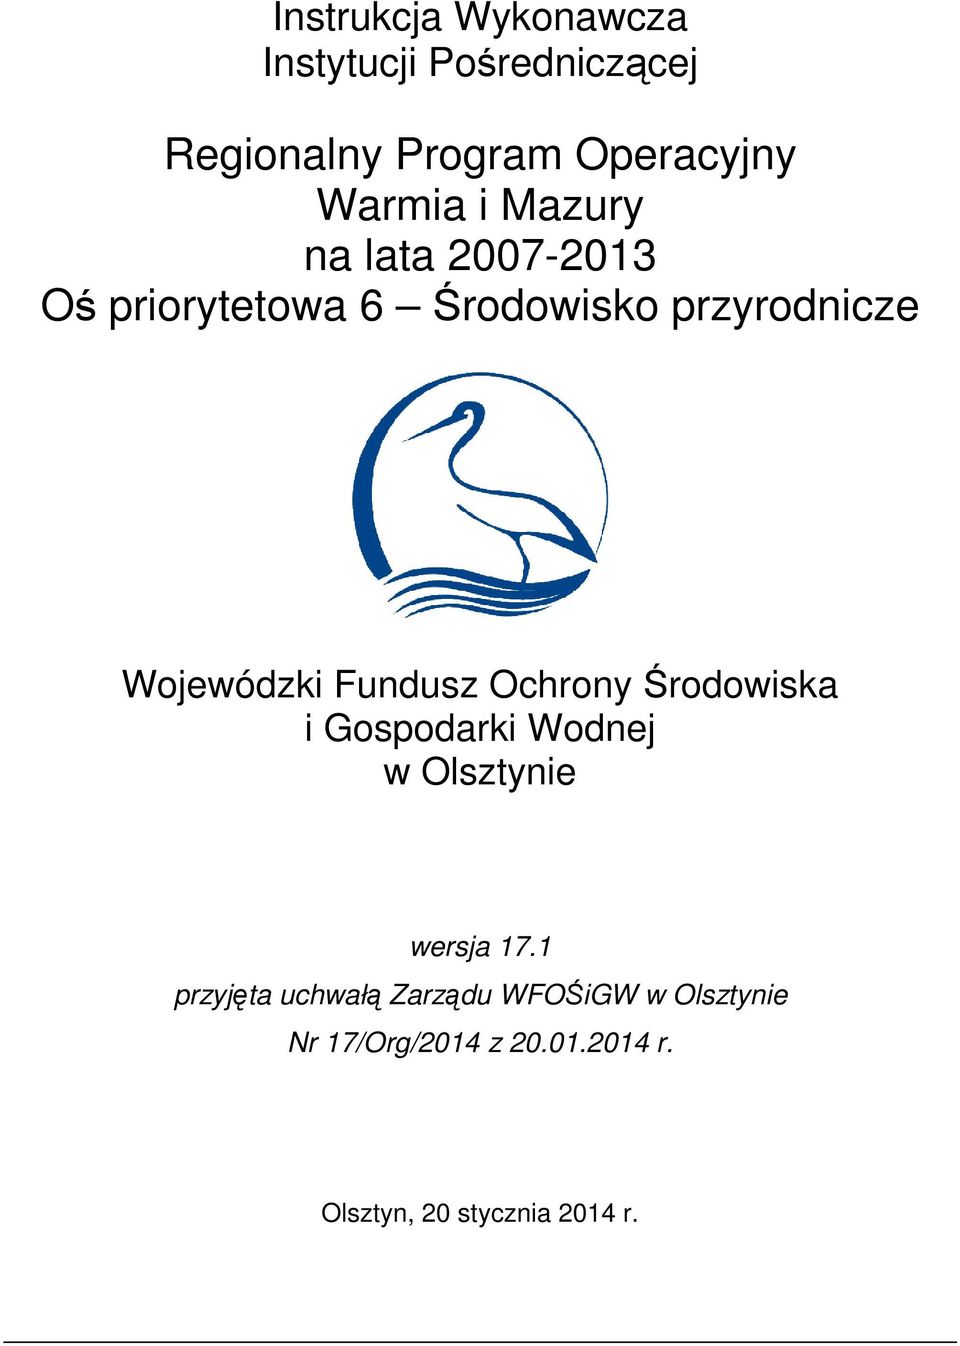 Fundusz Ochrony Środowiska i Gospodarki Wodnej w Olsztynie wersja 17.